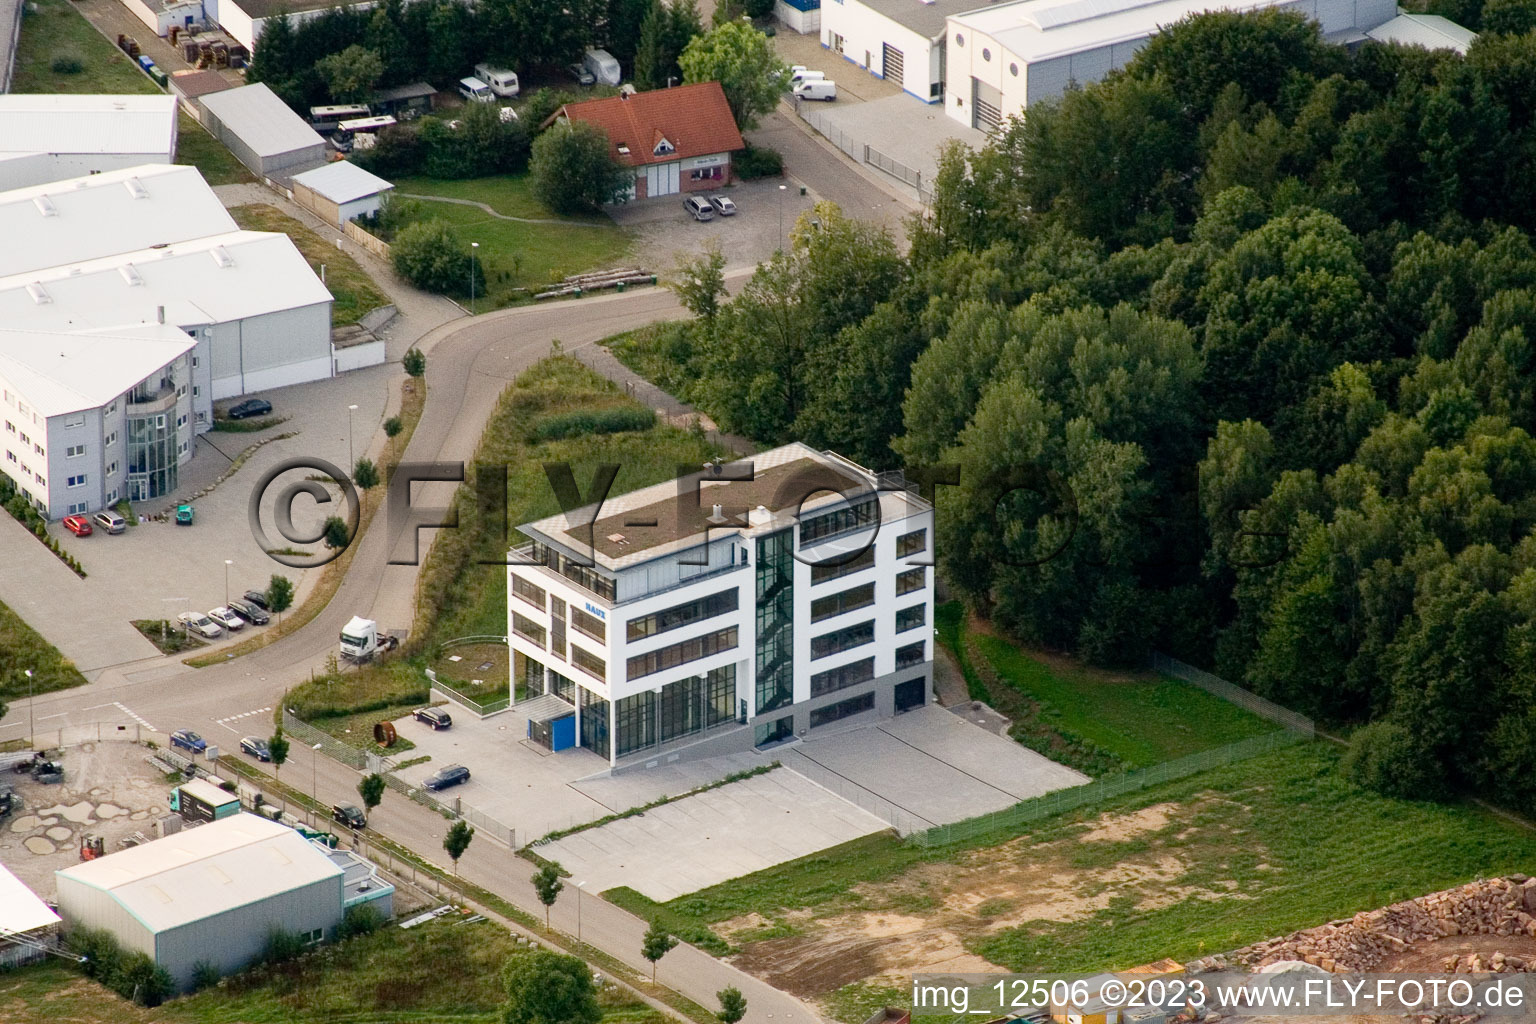 Ittersbach, zone industrielle à le quartier Im Stockmädle in Karlsbad dans le département Bade-Wurtemberg, Allemagne vue du ciel